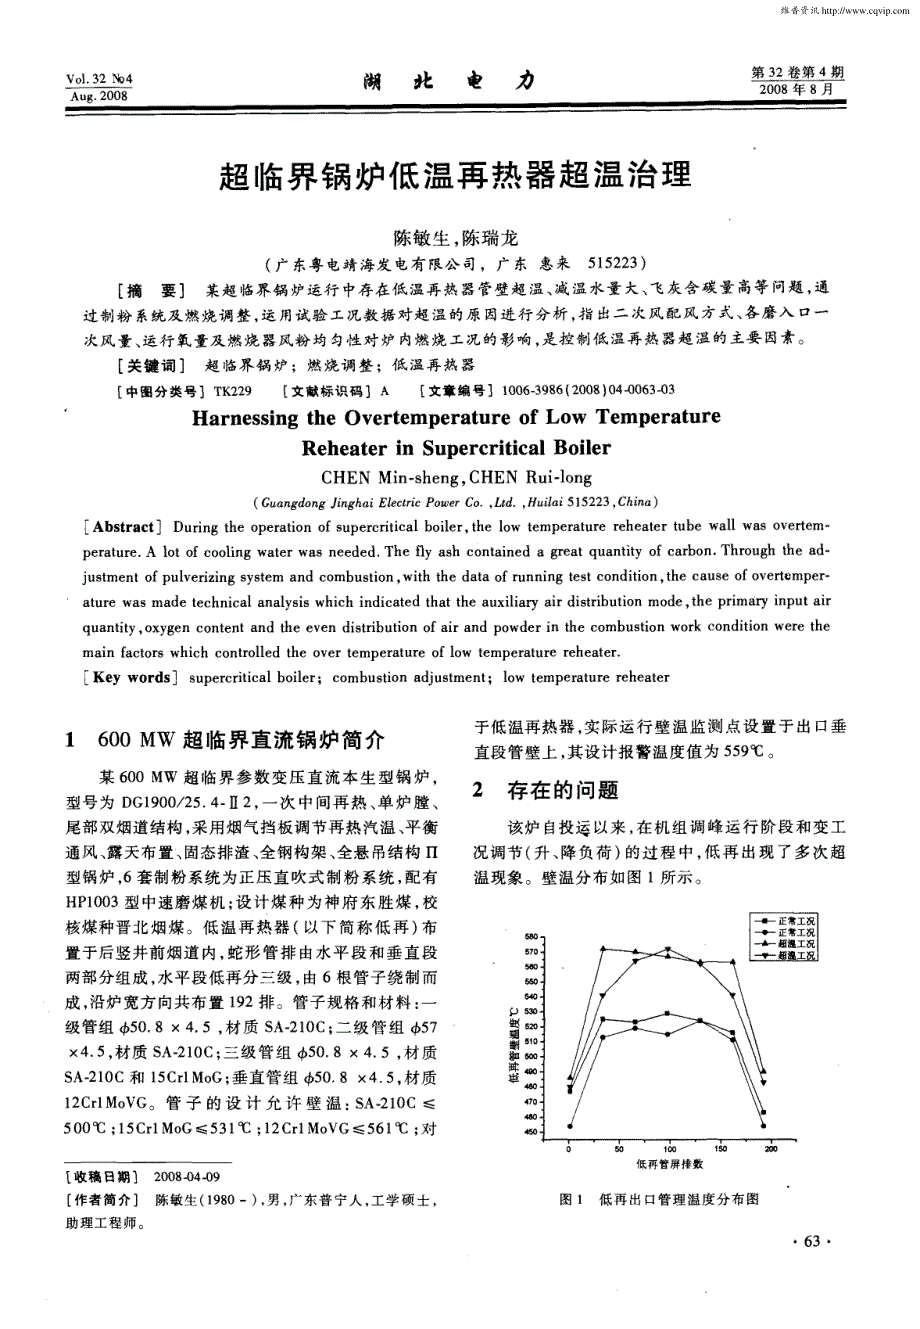 超临界锅炉低温再热器超温治理_第1页